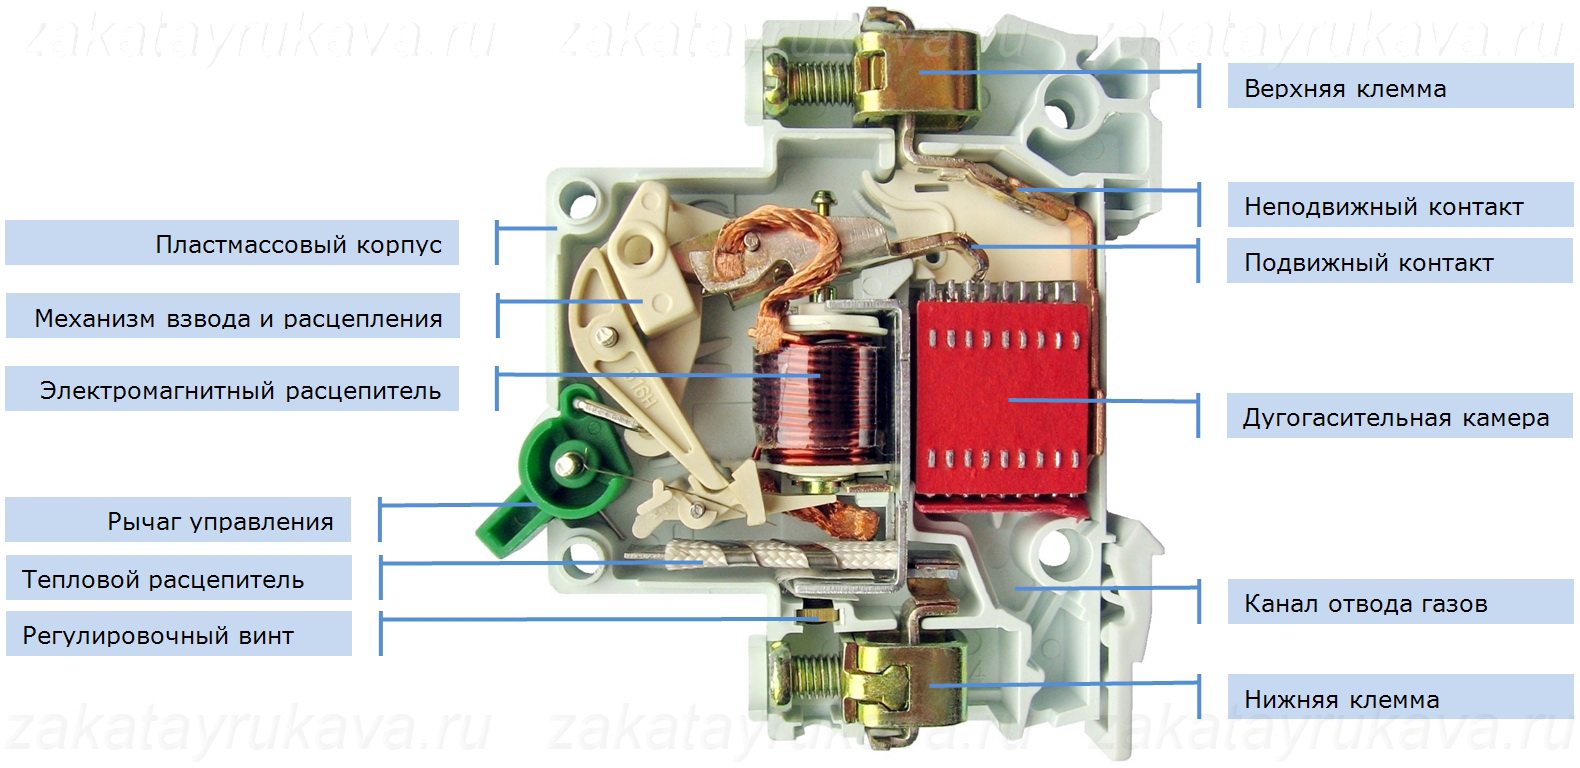 Основные характеристики автоматического выключателя